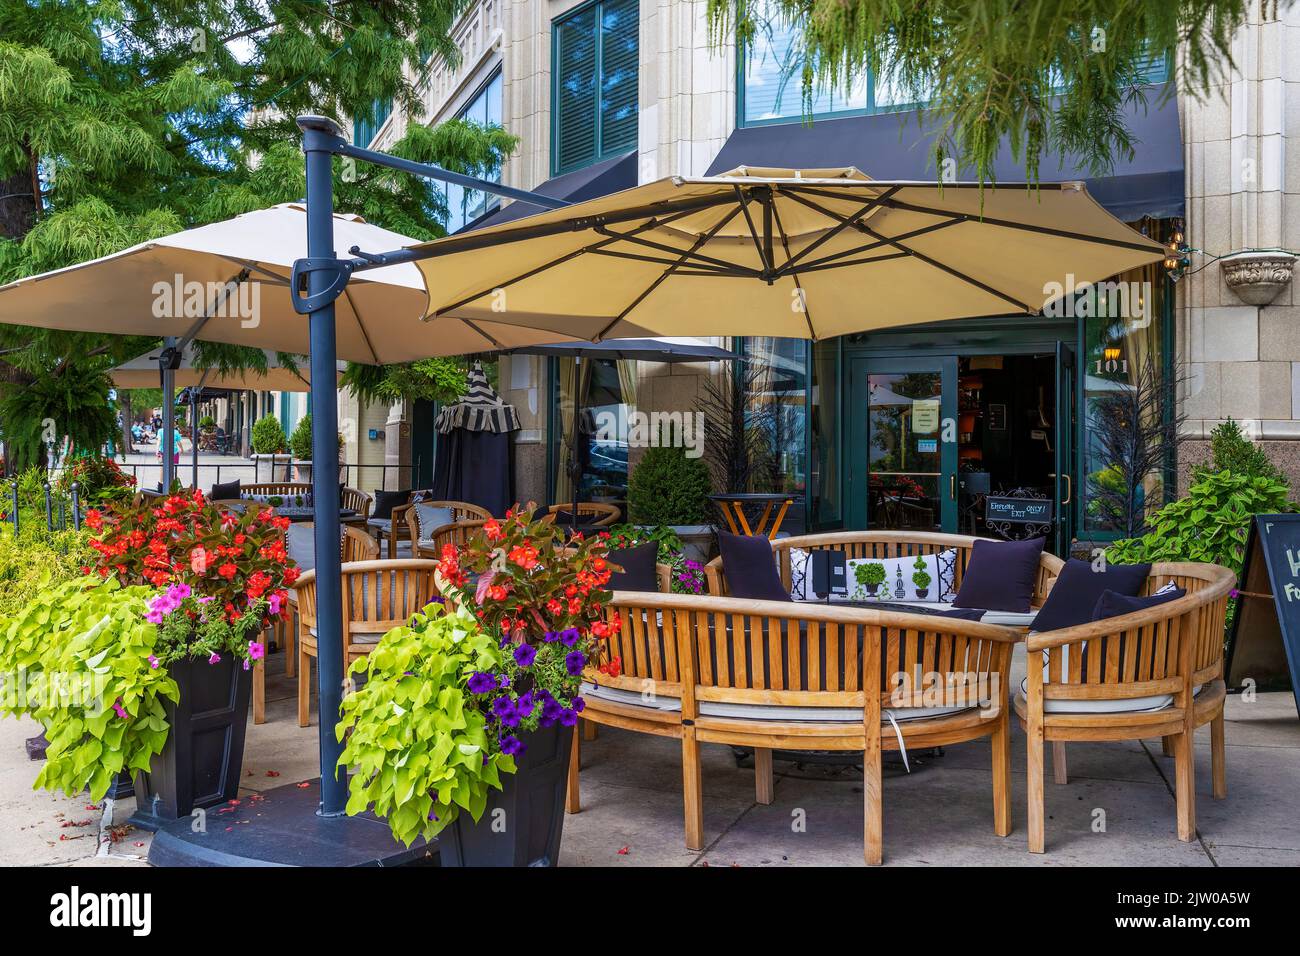 Ashville, Carolina del Norte, EE.UU. - 27 de agosto de 2022: El distrito del centro ofrece una variedad de restaurantes y tiendas. Foto de stock